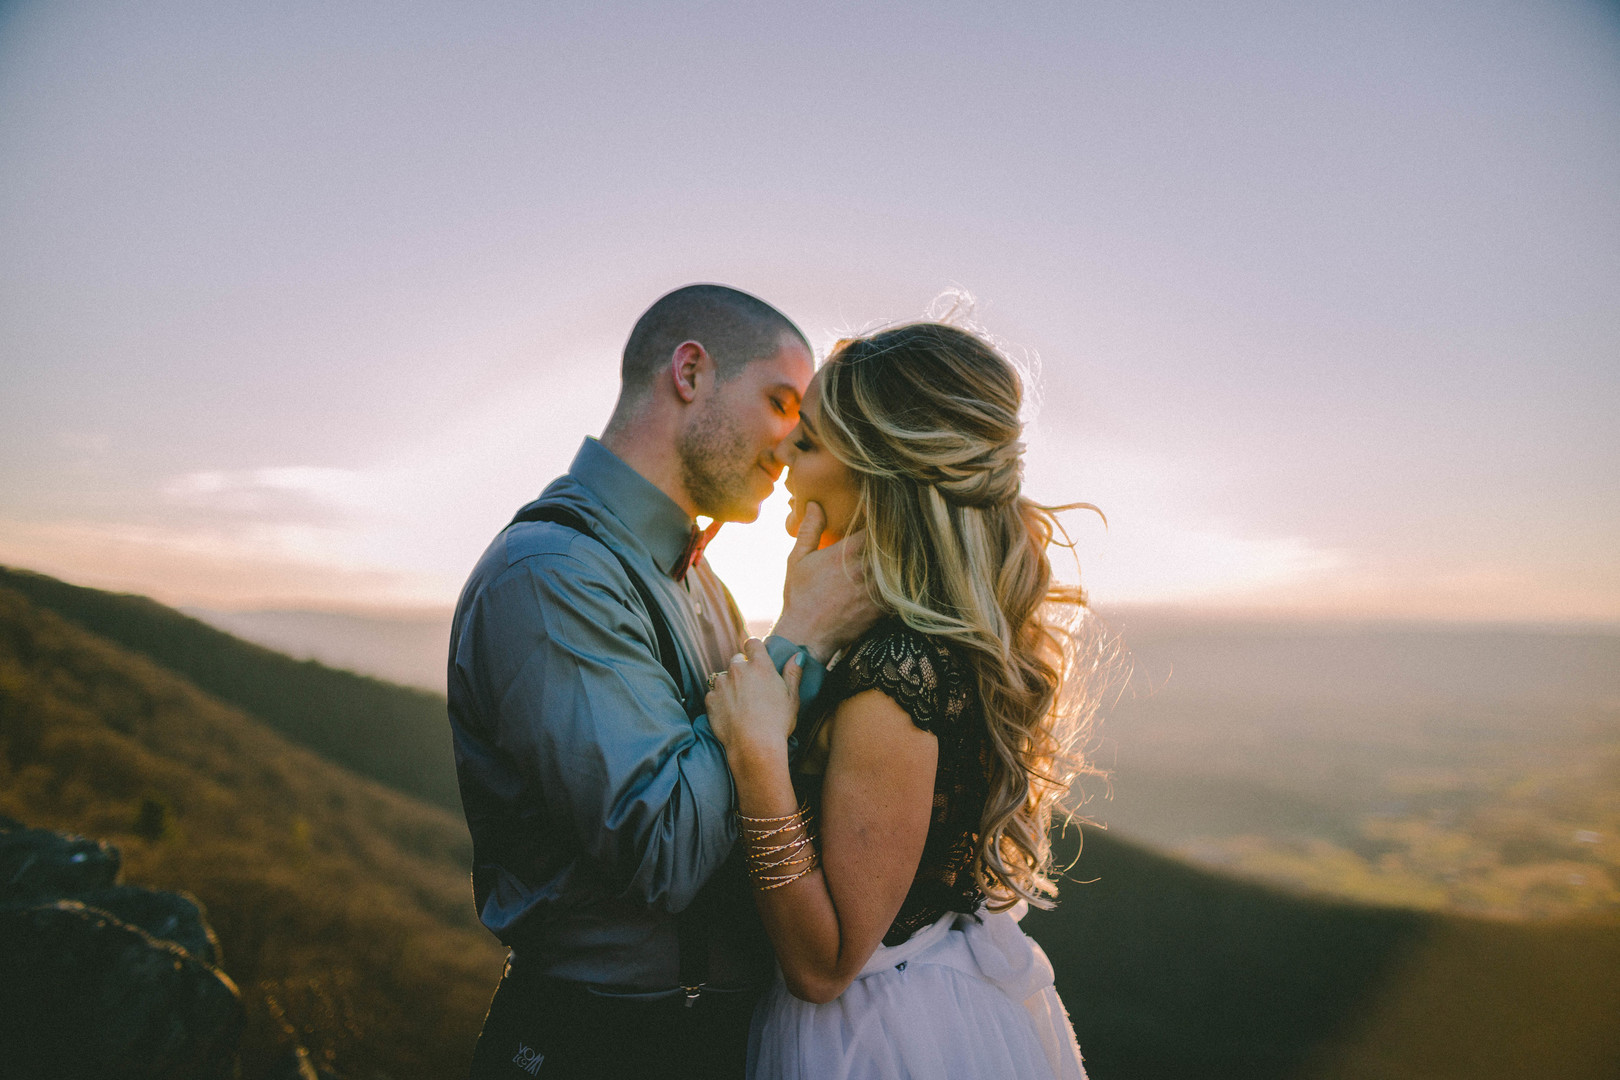 arrangerade äktenskap Dating Tips 100 fri armé dejtingsajt